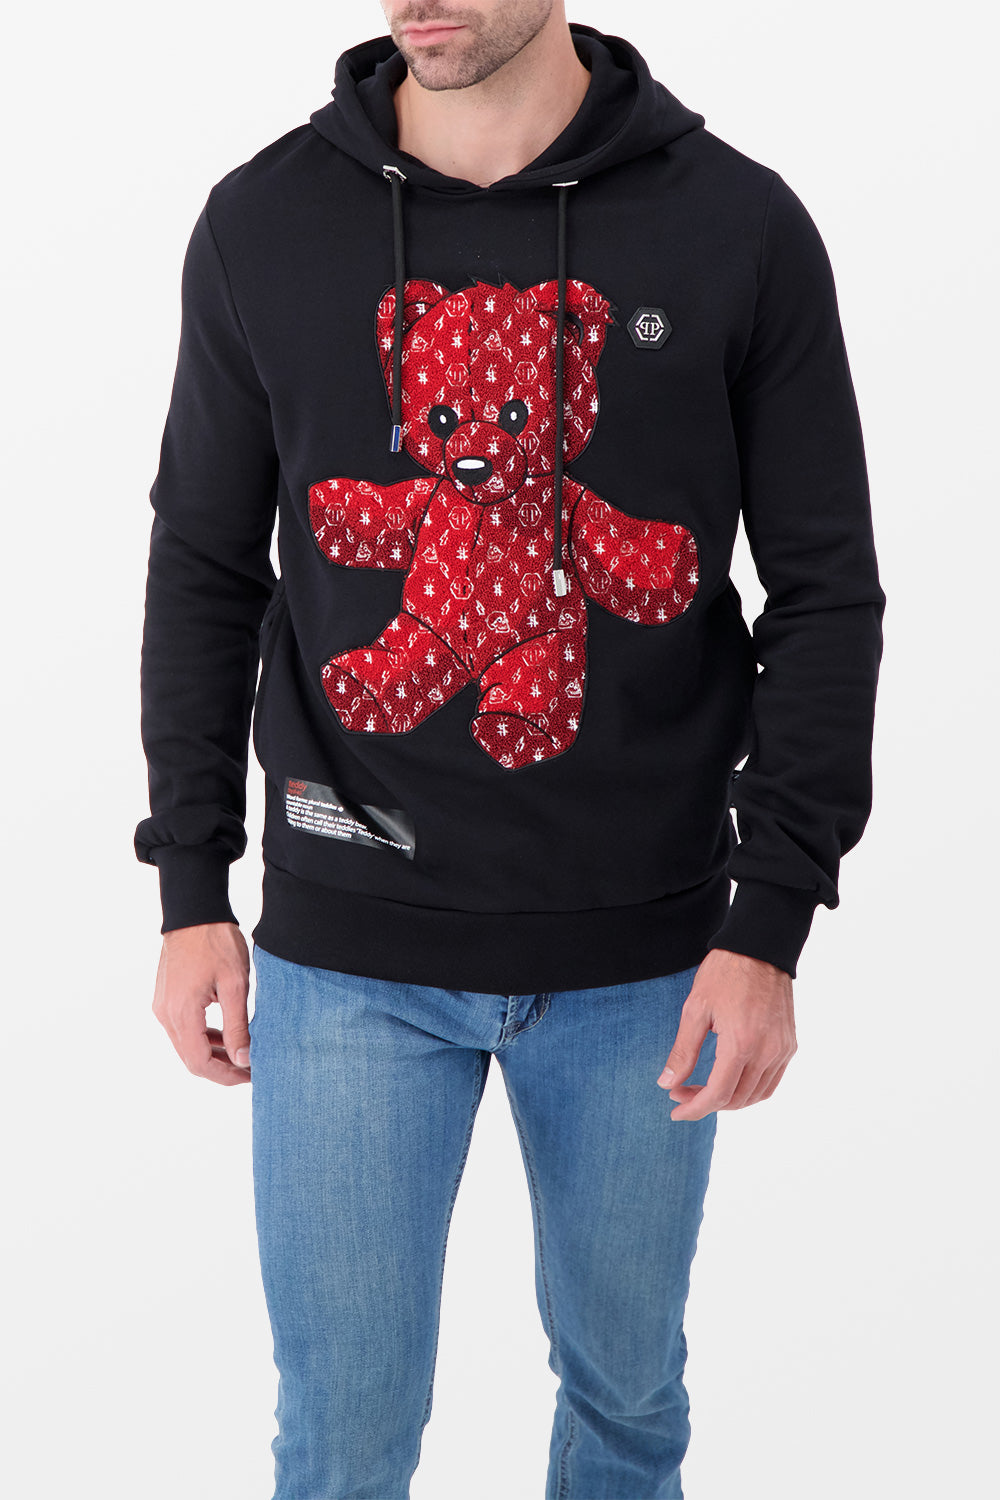 Philipp Plein Teddy Bear Black/Red Hoodie